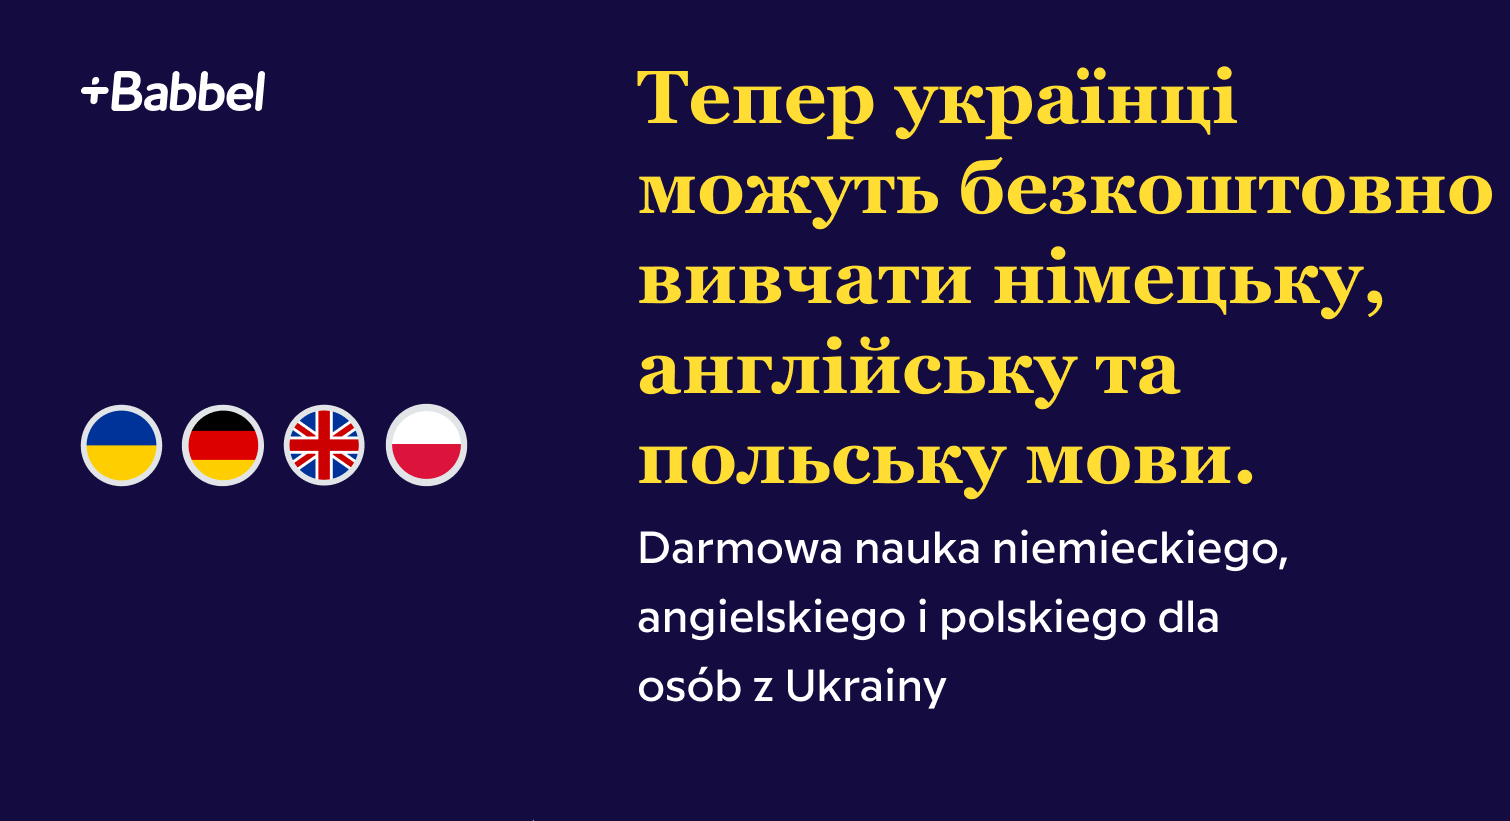 Darmowe kursy językowe dla Ukraińców od Babbel